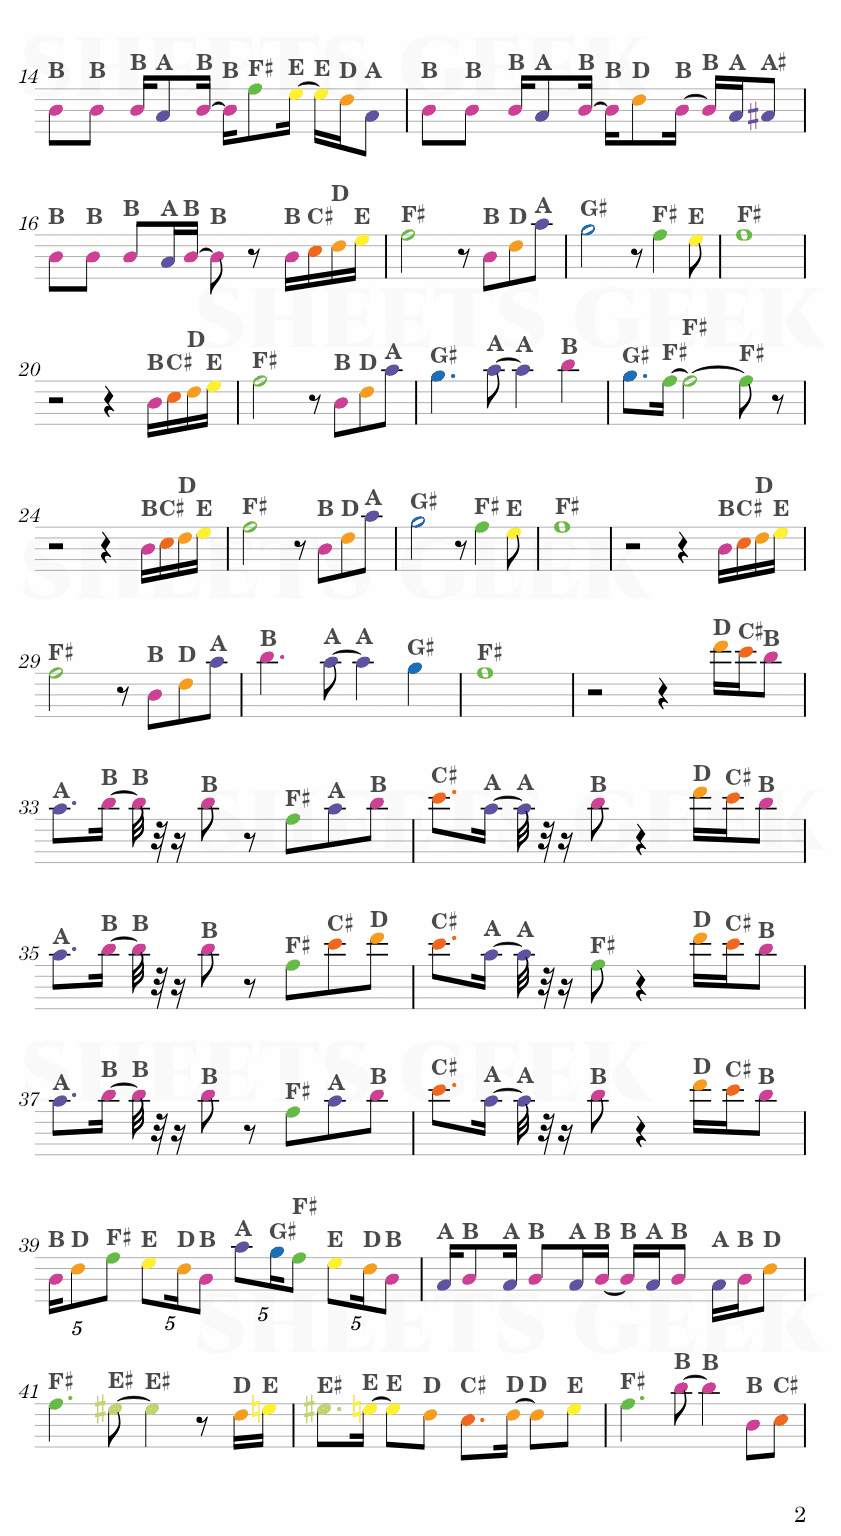 Giorno's Theme - Jojo's Bizarre Adventure Easy Sheets Music Free for piano, keyboard, flute, violin, sax, celllo 2